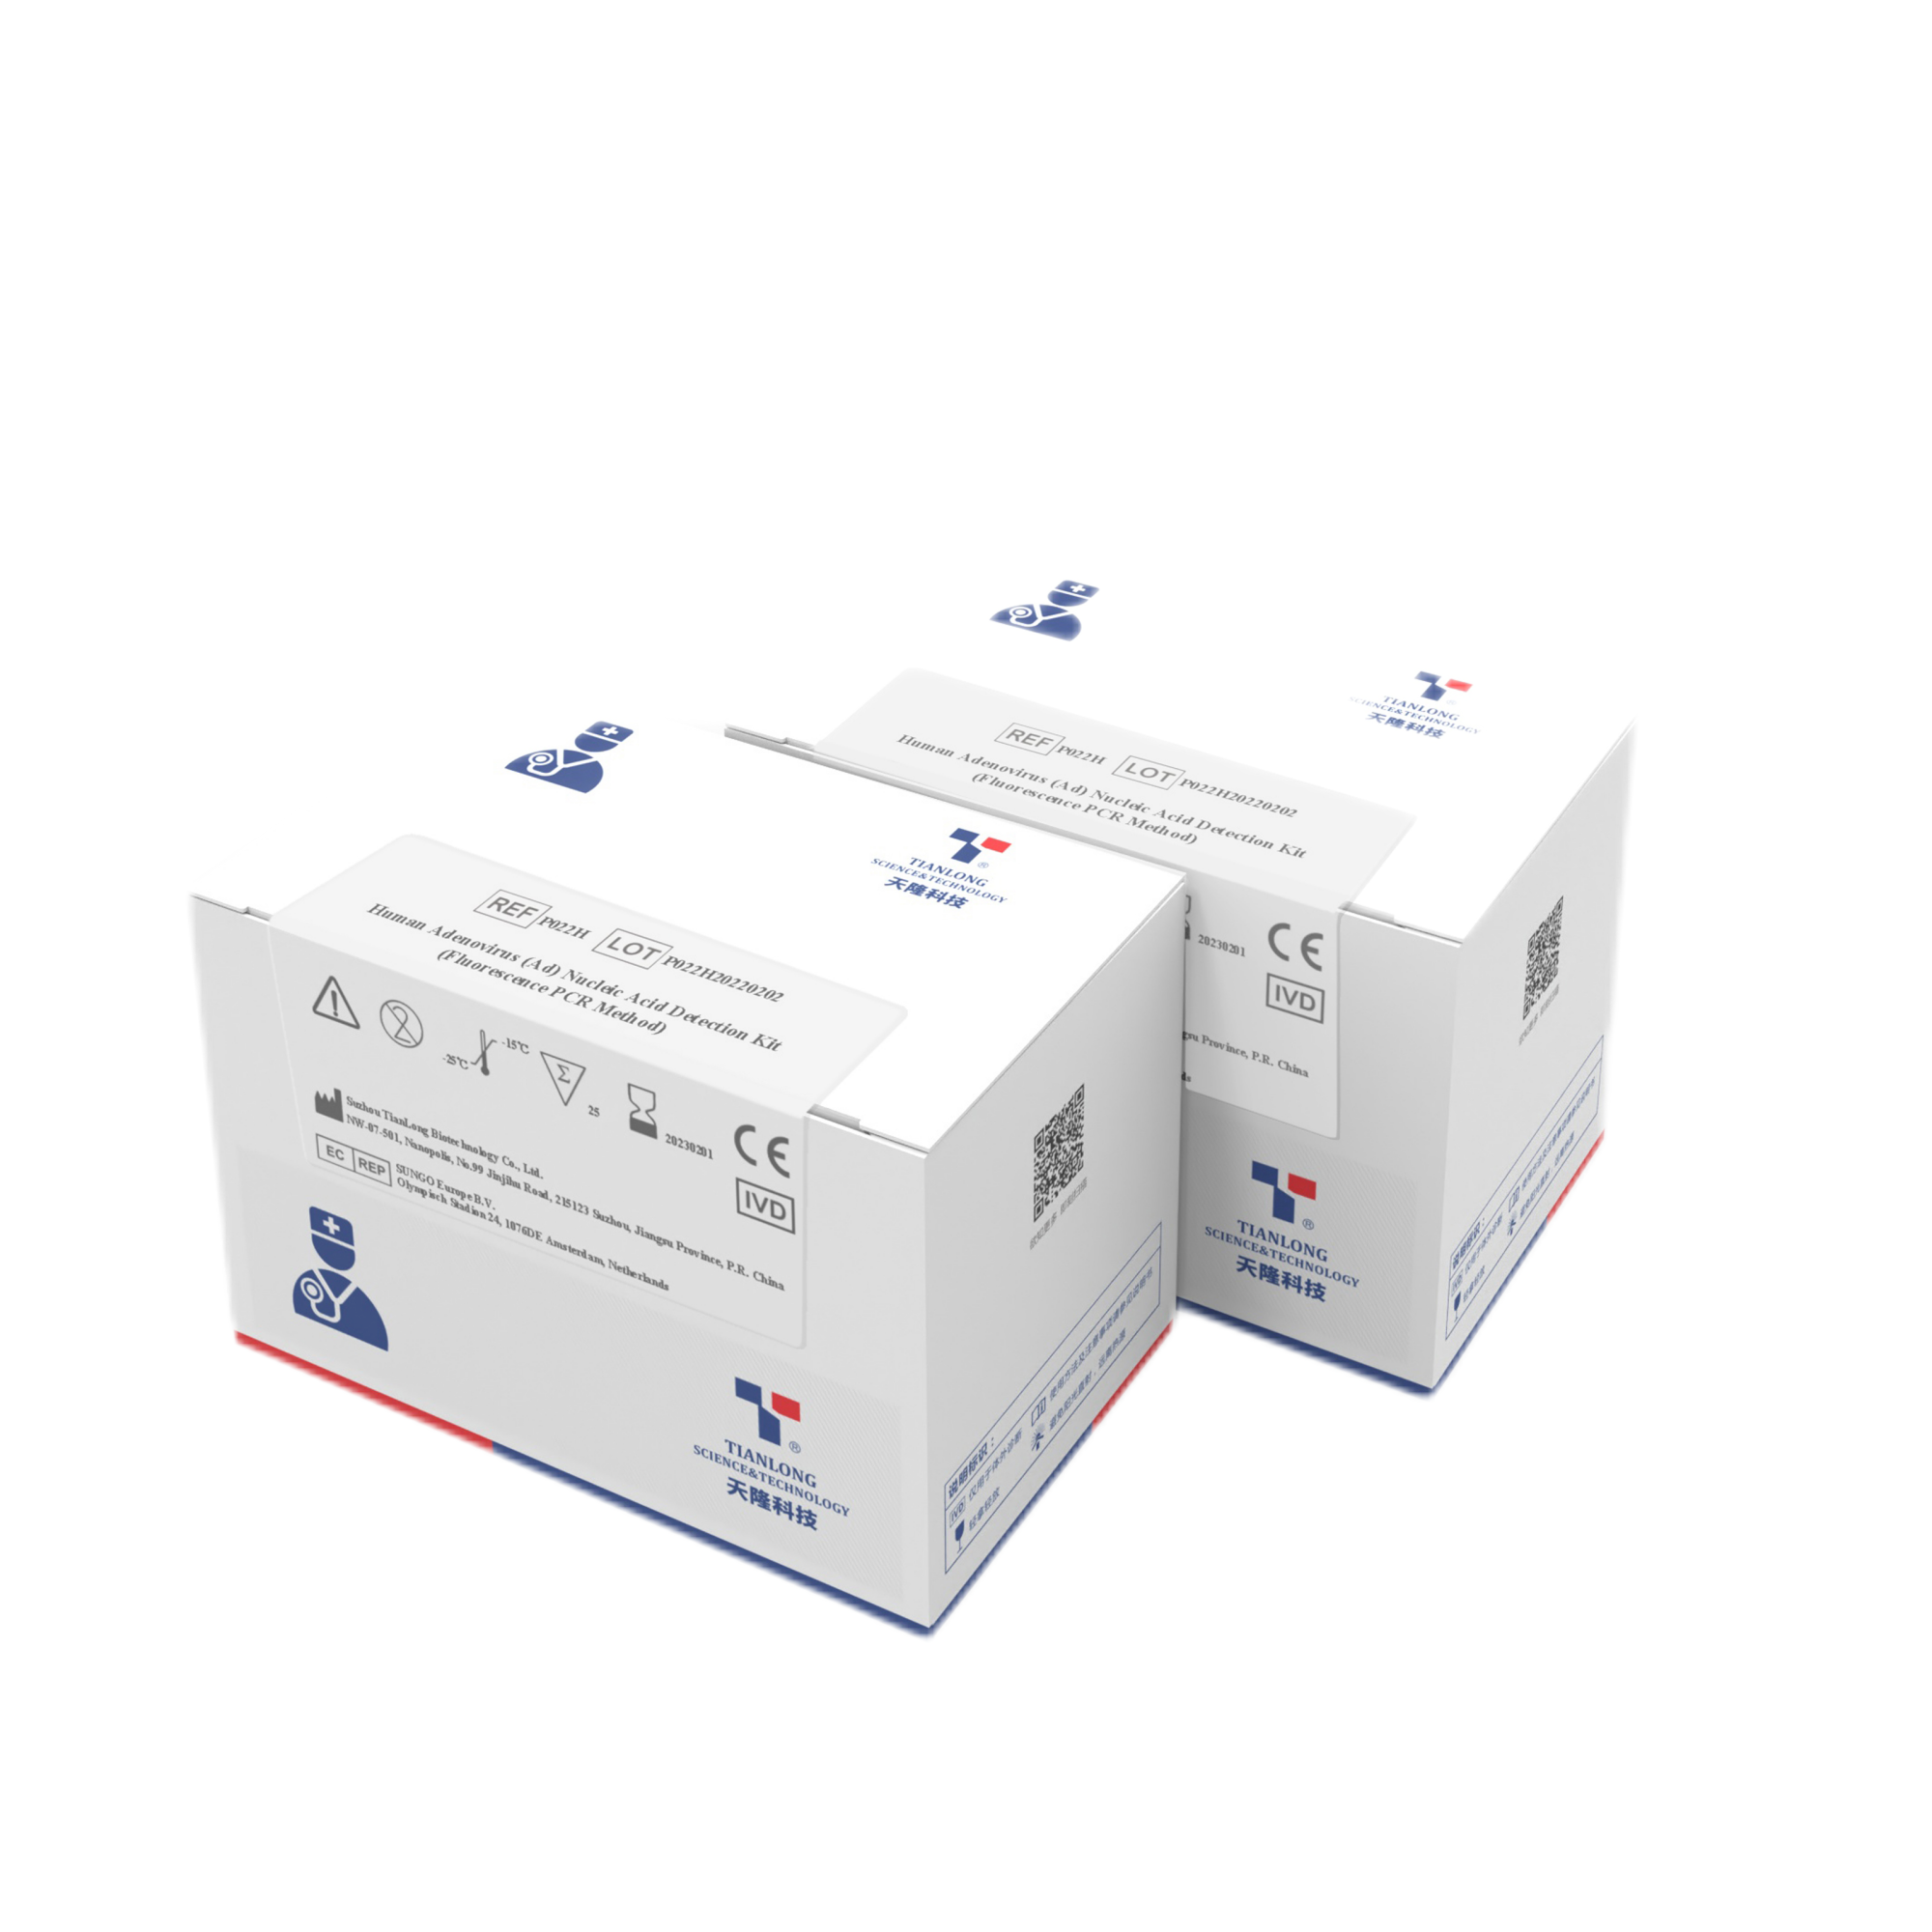 P022H - Kit de détection d'acide nucléique d'adénovirus humain (Ad)